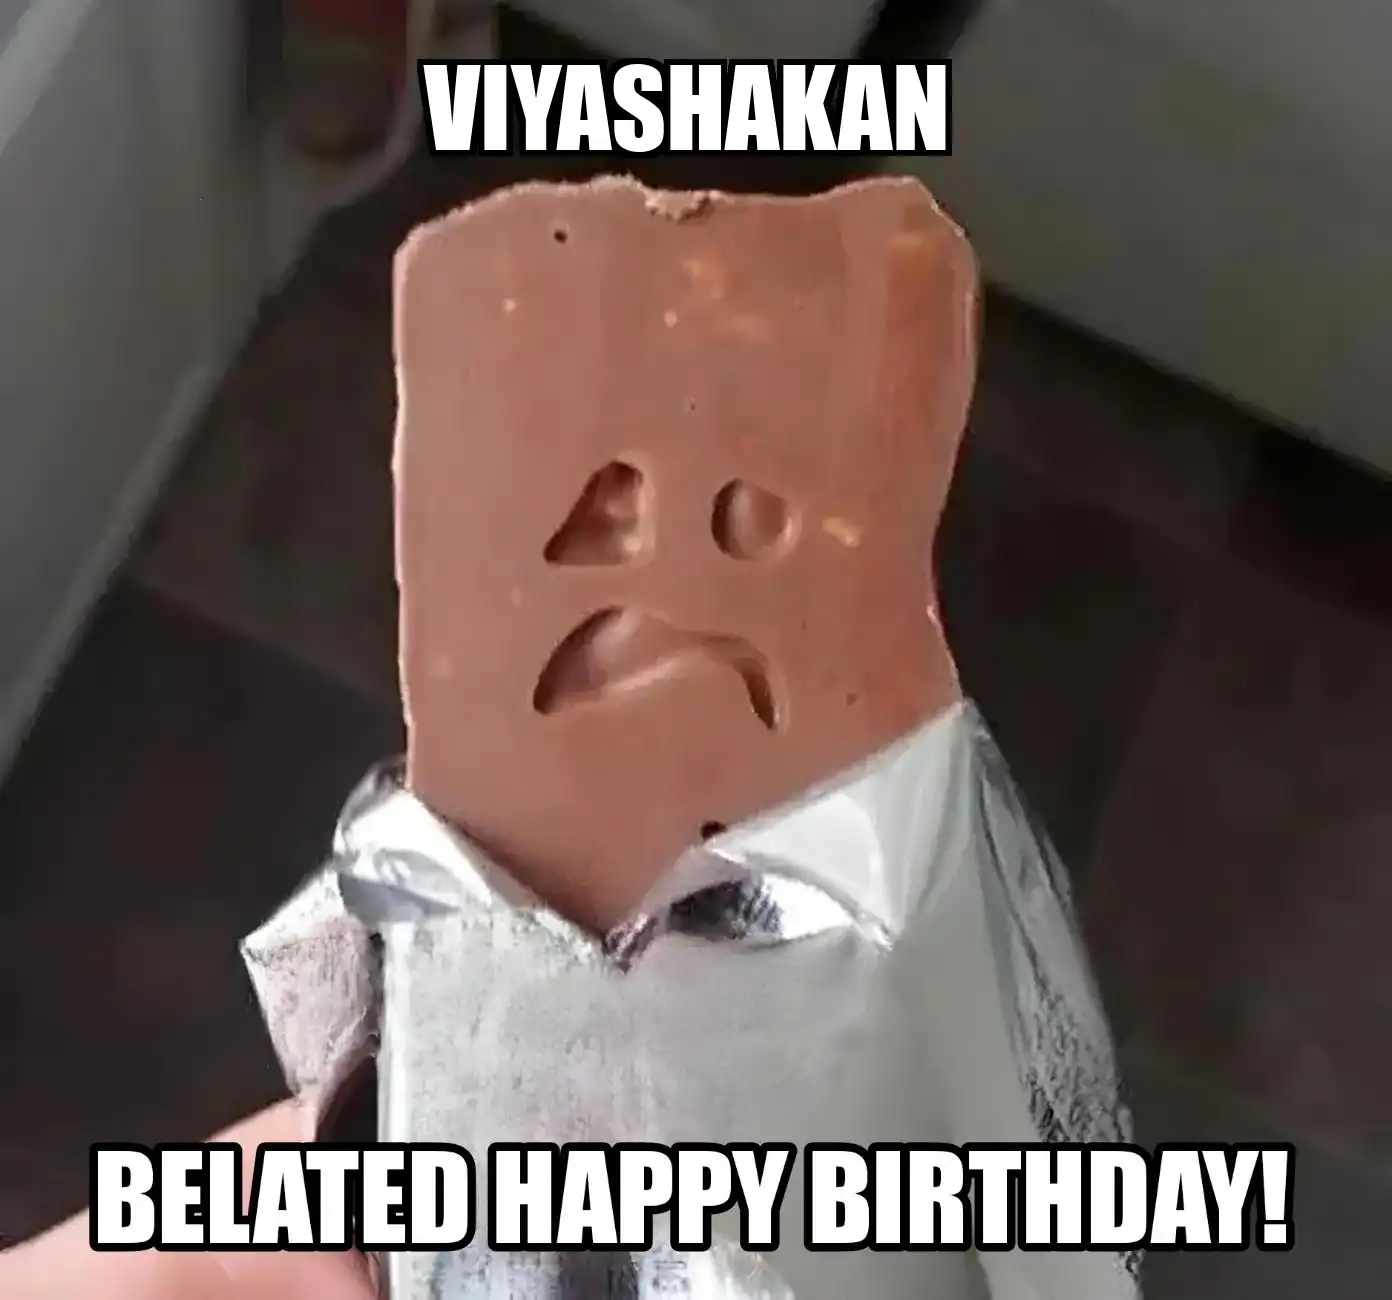 Happy Birthday Viyashakan Belated Happy Birthday Meme